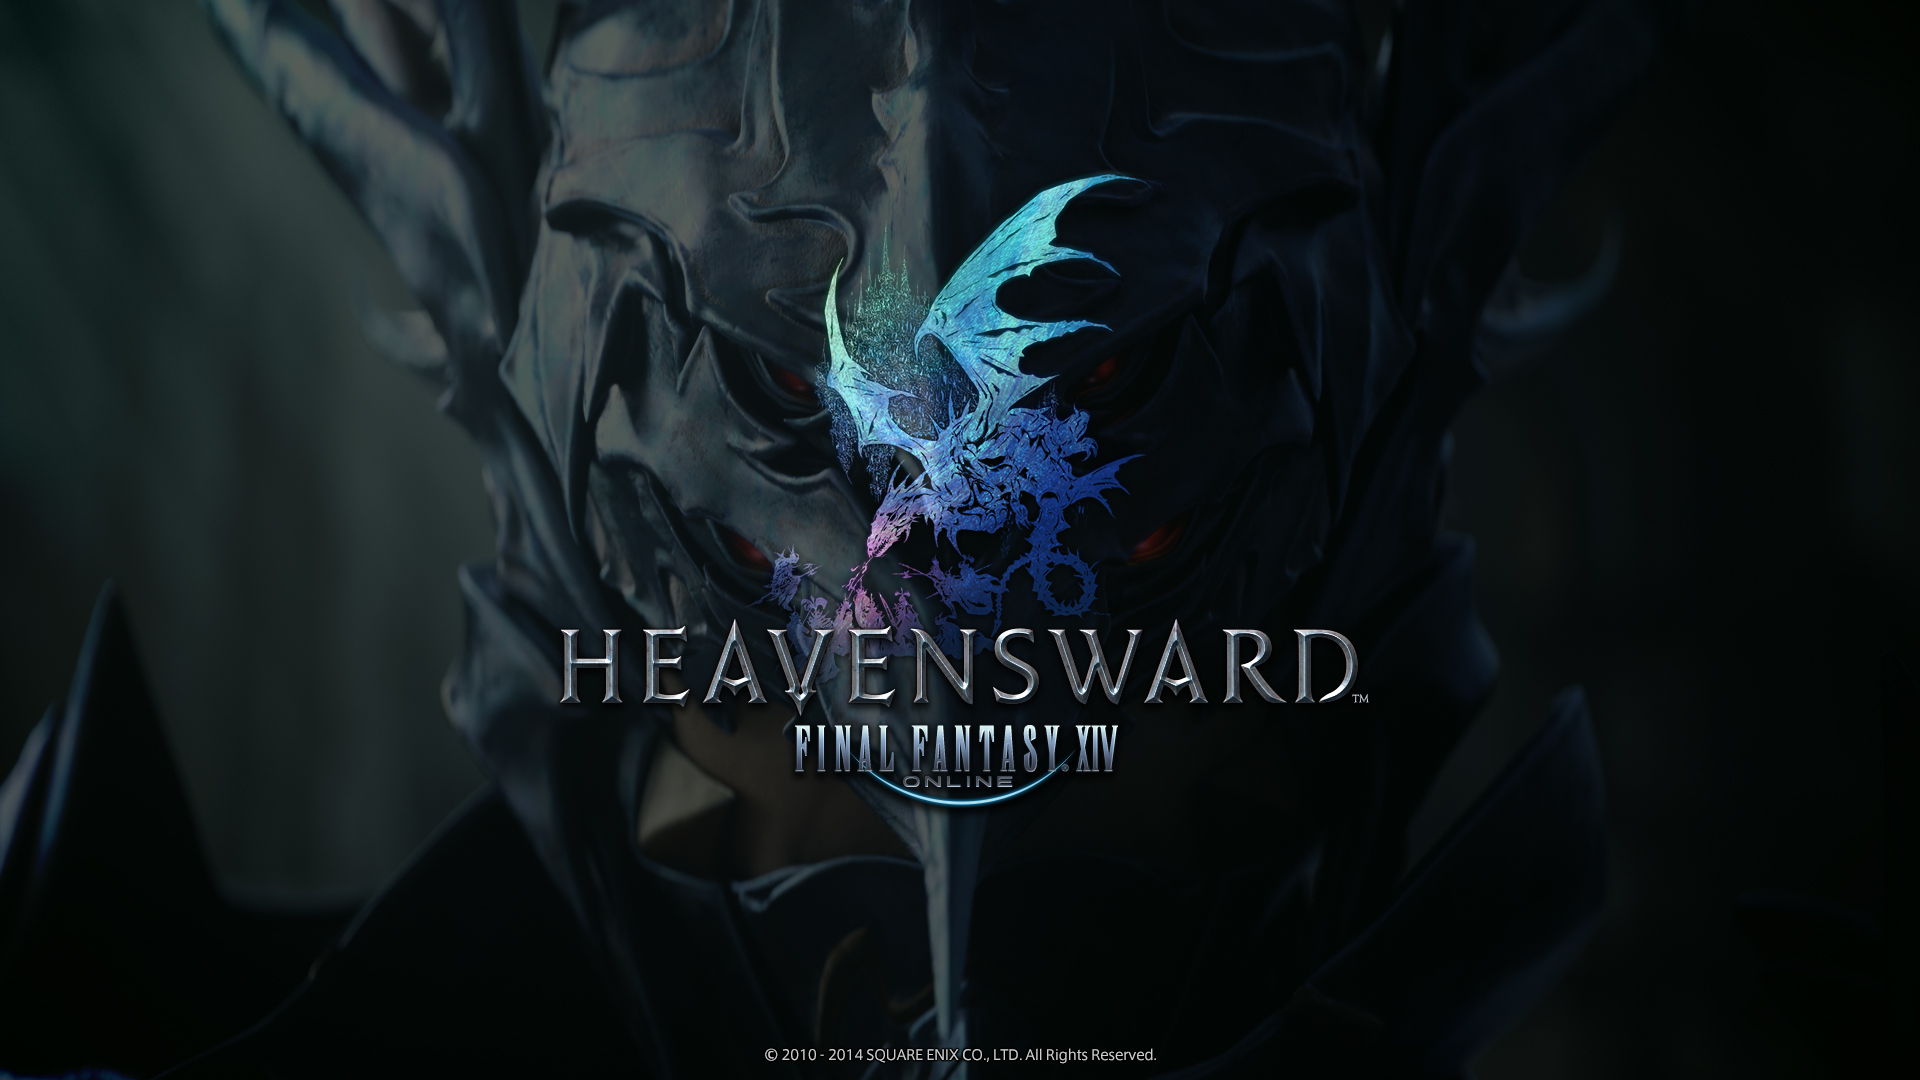 Final Fantasy Xiv Heavensward Ing Spring